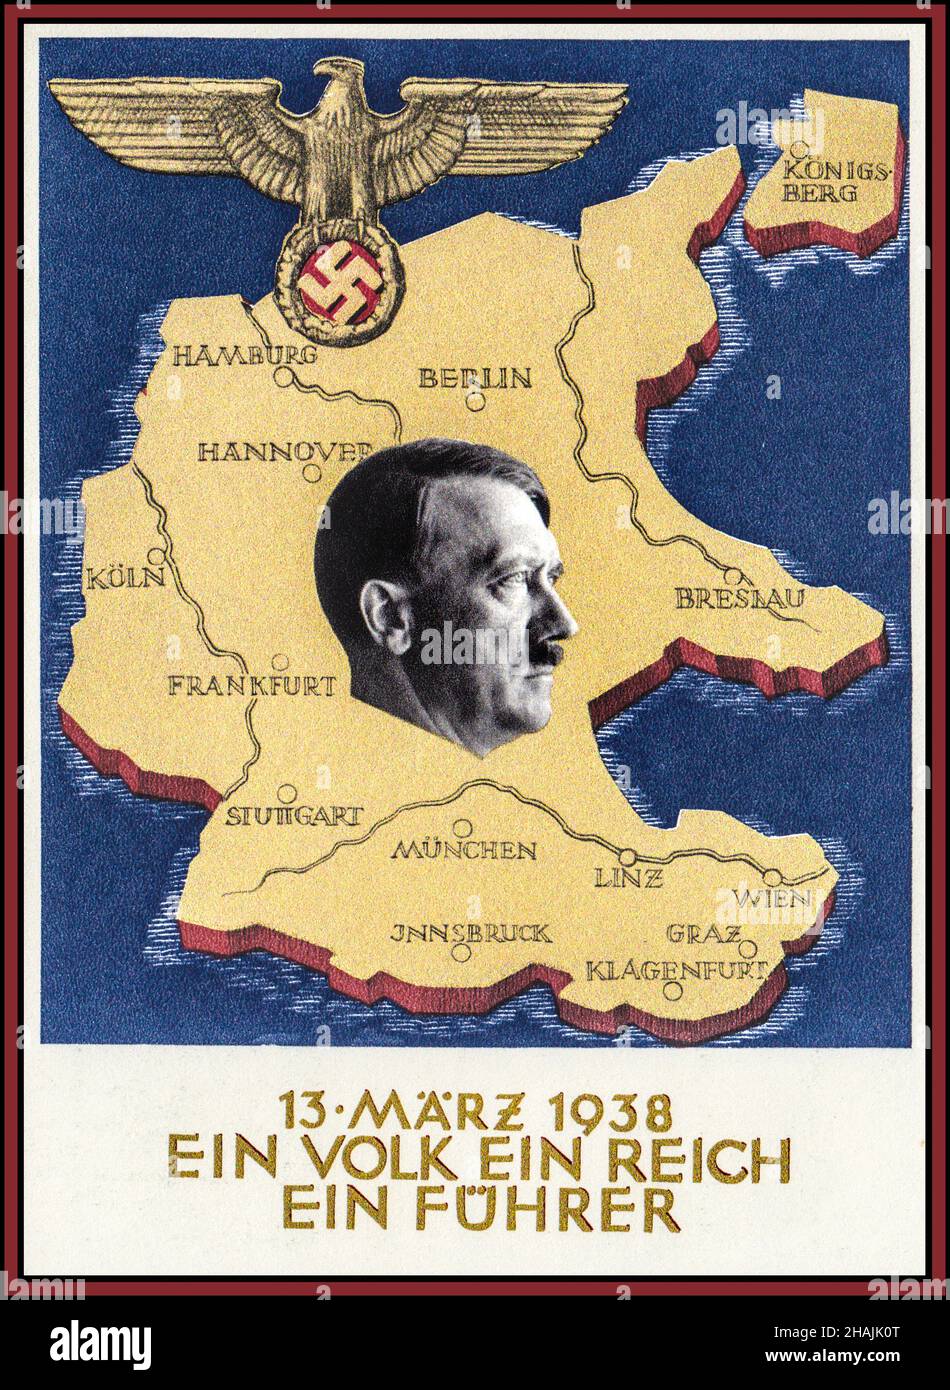 ANSCHLUSS Vintage Nazi Propaganda Poster EIN VOLK EIN REICH EIN FUHRER Anschluss, tedesco: “Unione”, Unione politica dell’Austria con la Germania, raggiunta attraverso l’annessione di Adolf Hitler nel 1938 Foto Stock